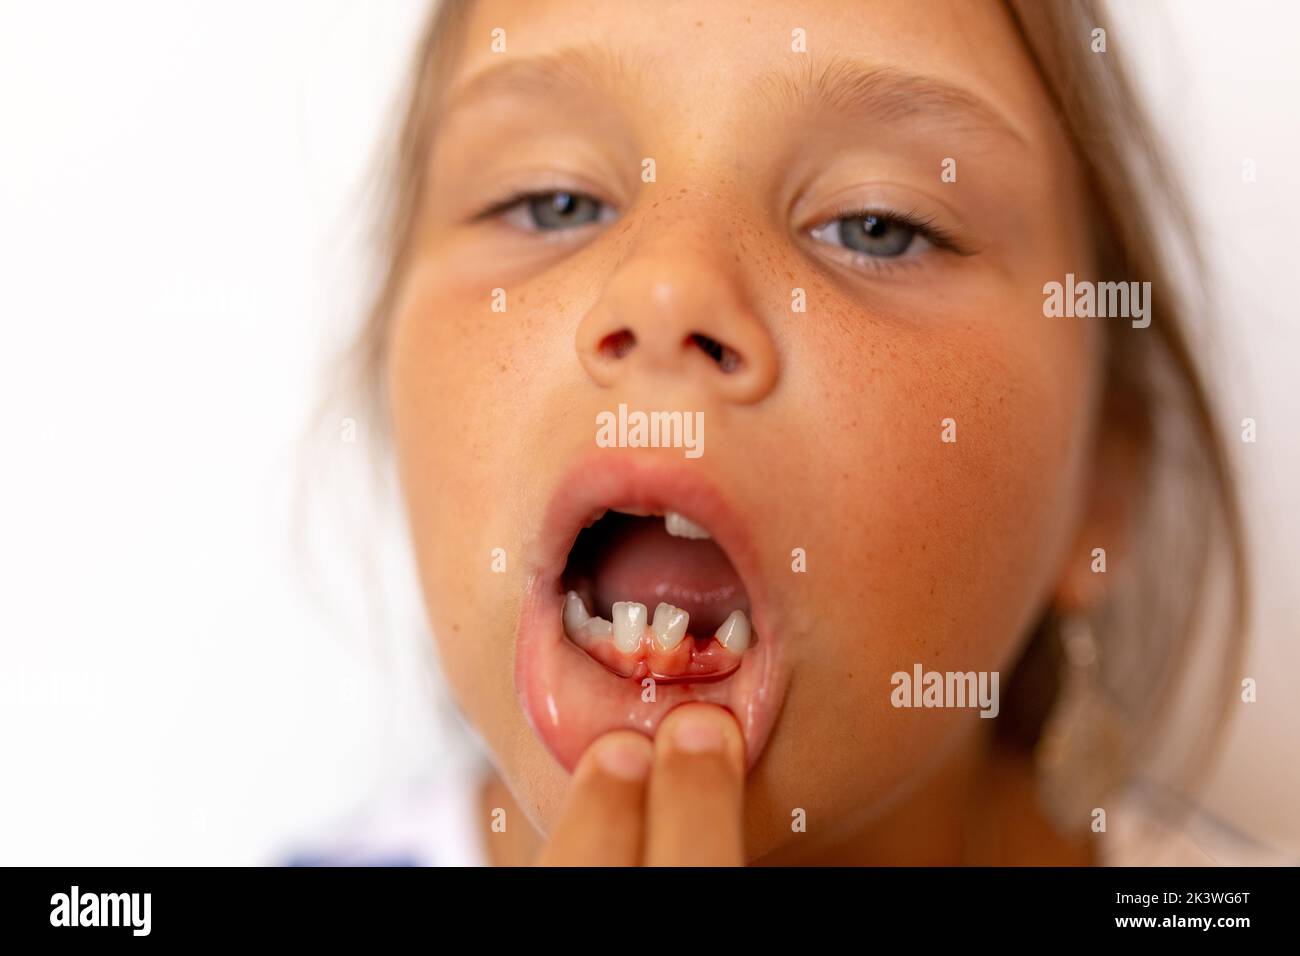 Triste, petite fille fatiguée tirer sur la lèvre pour montrer la bouche sans dents, la plaie fraîche saignant après l'extraction de la dent. Traitement dentaire Banque D'Images